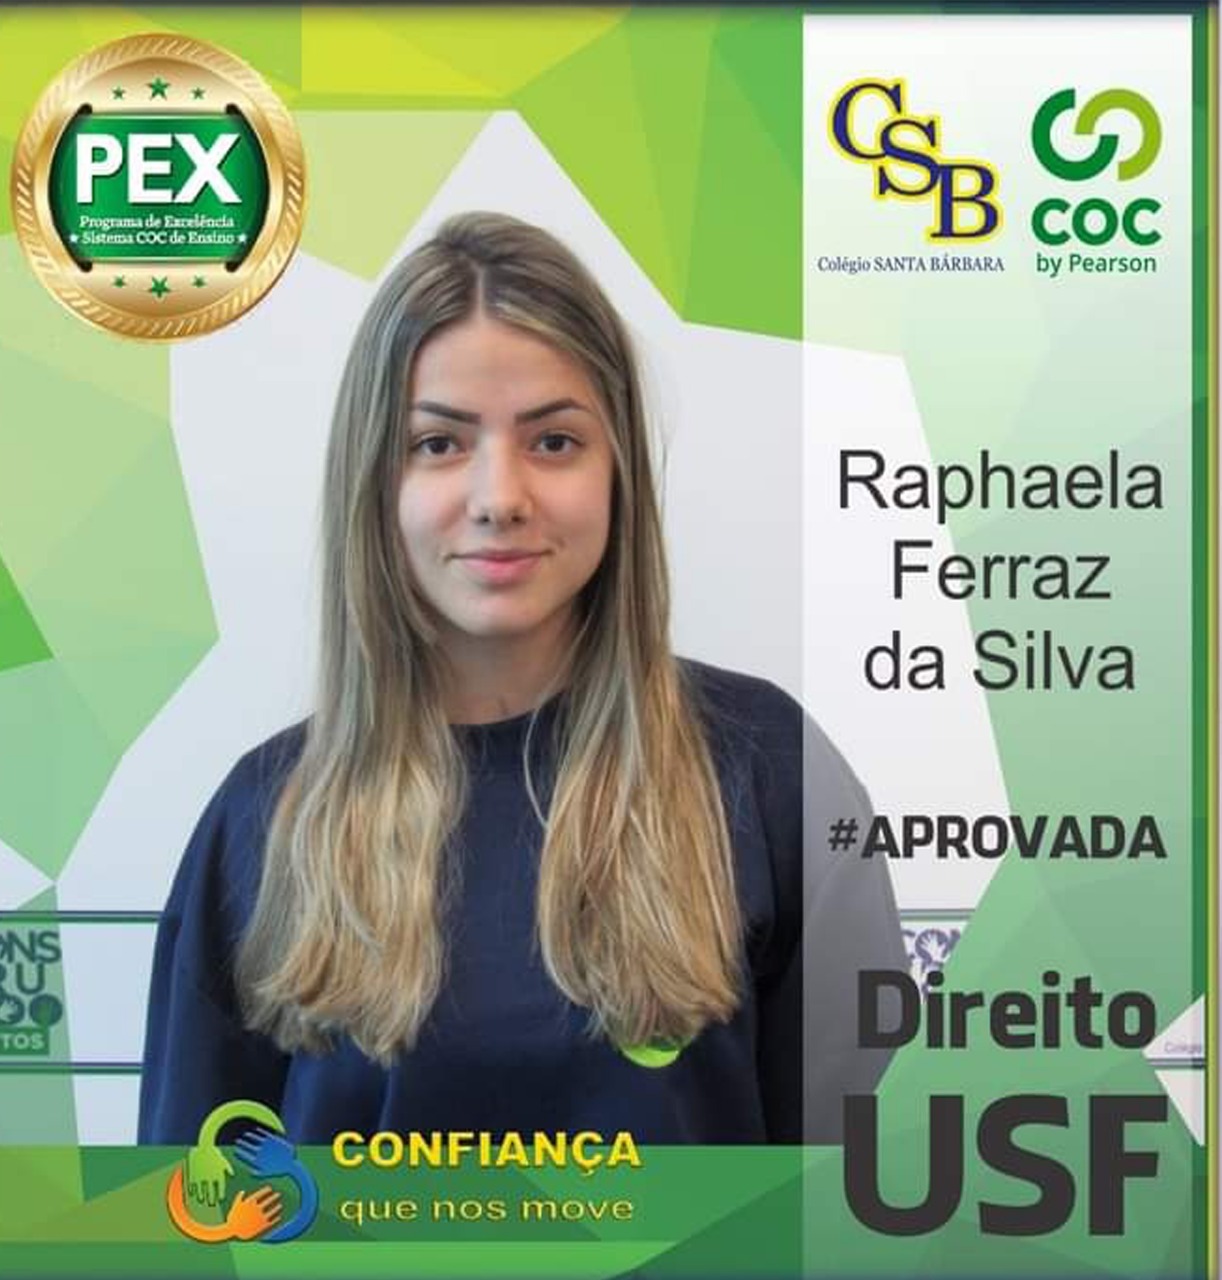 Raphaela Ferraz da Silva